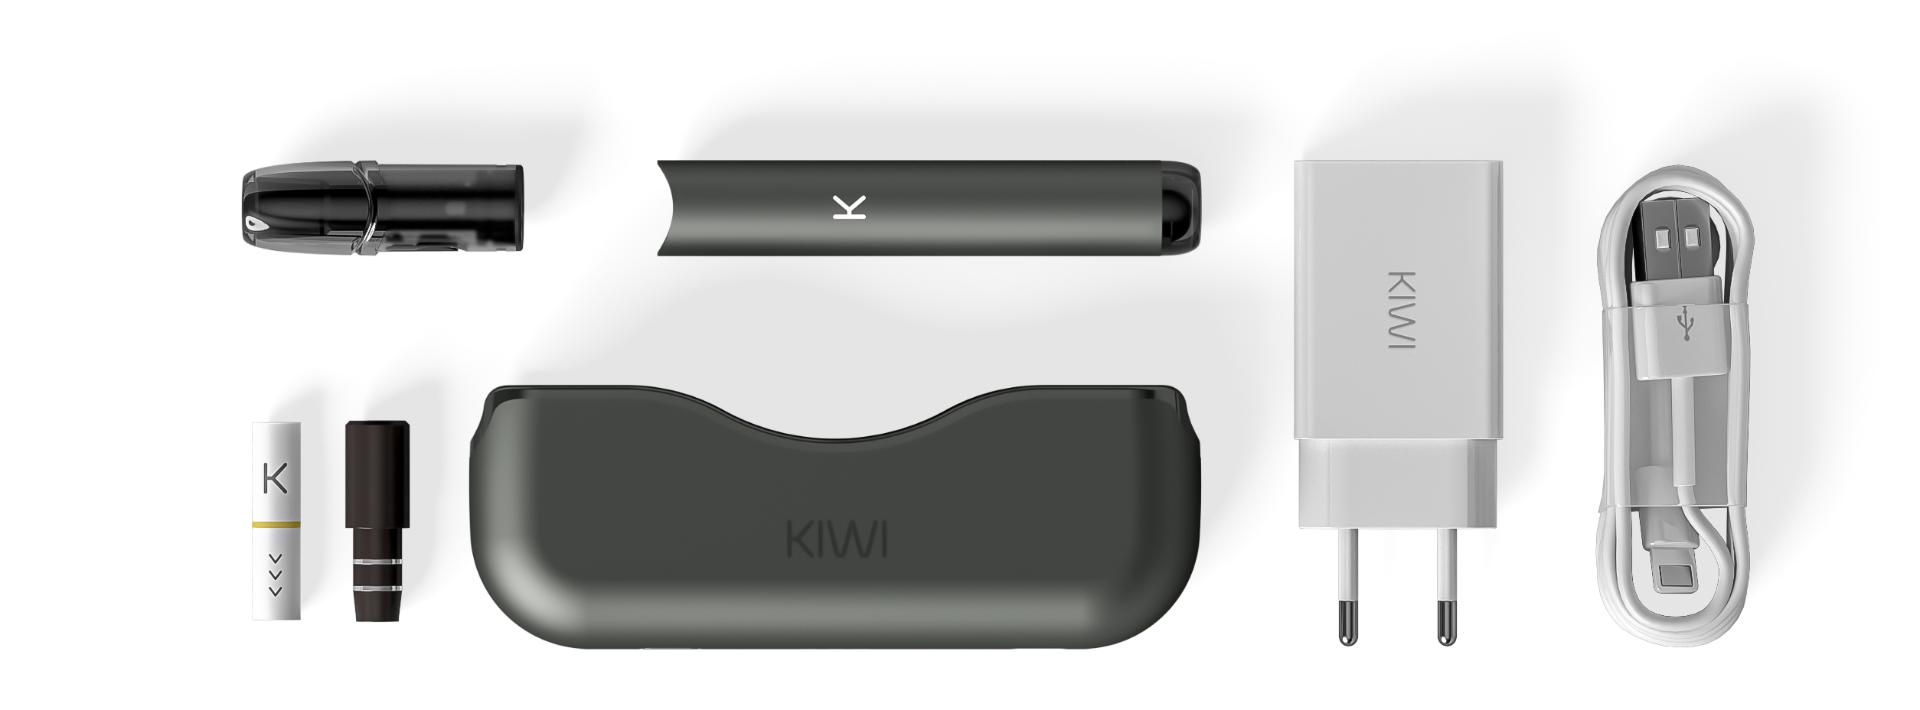 Kit Kiwi de Kiwi vapor en pièces détachées